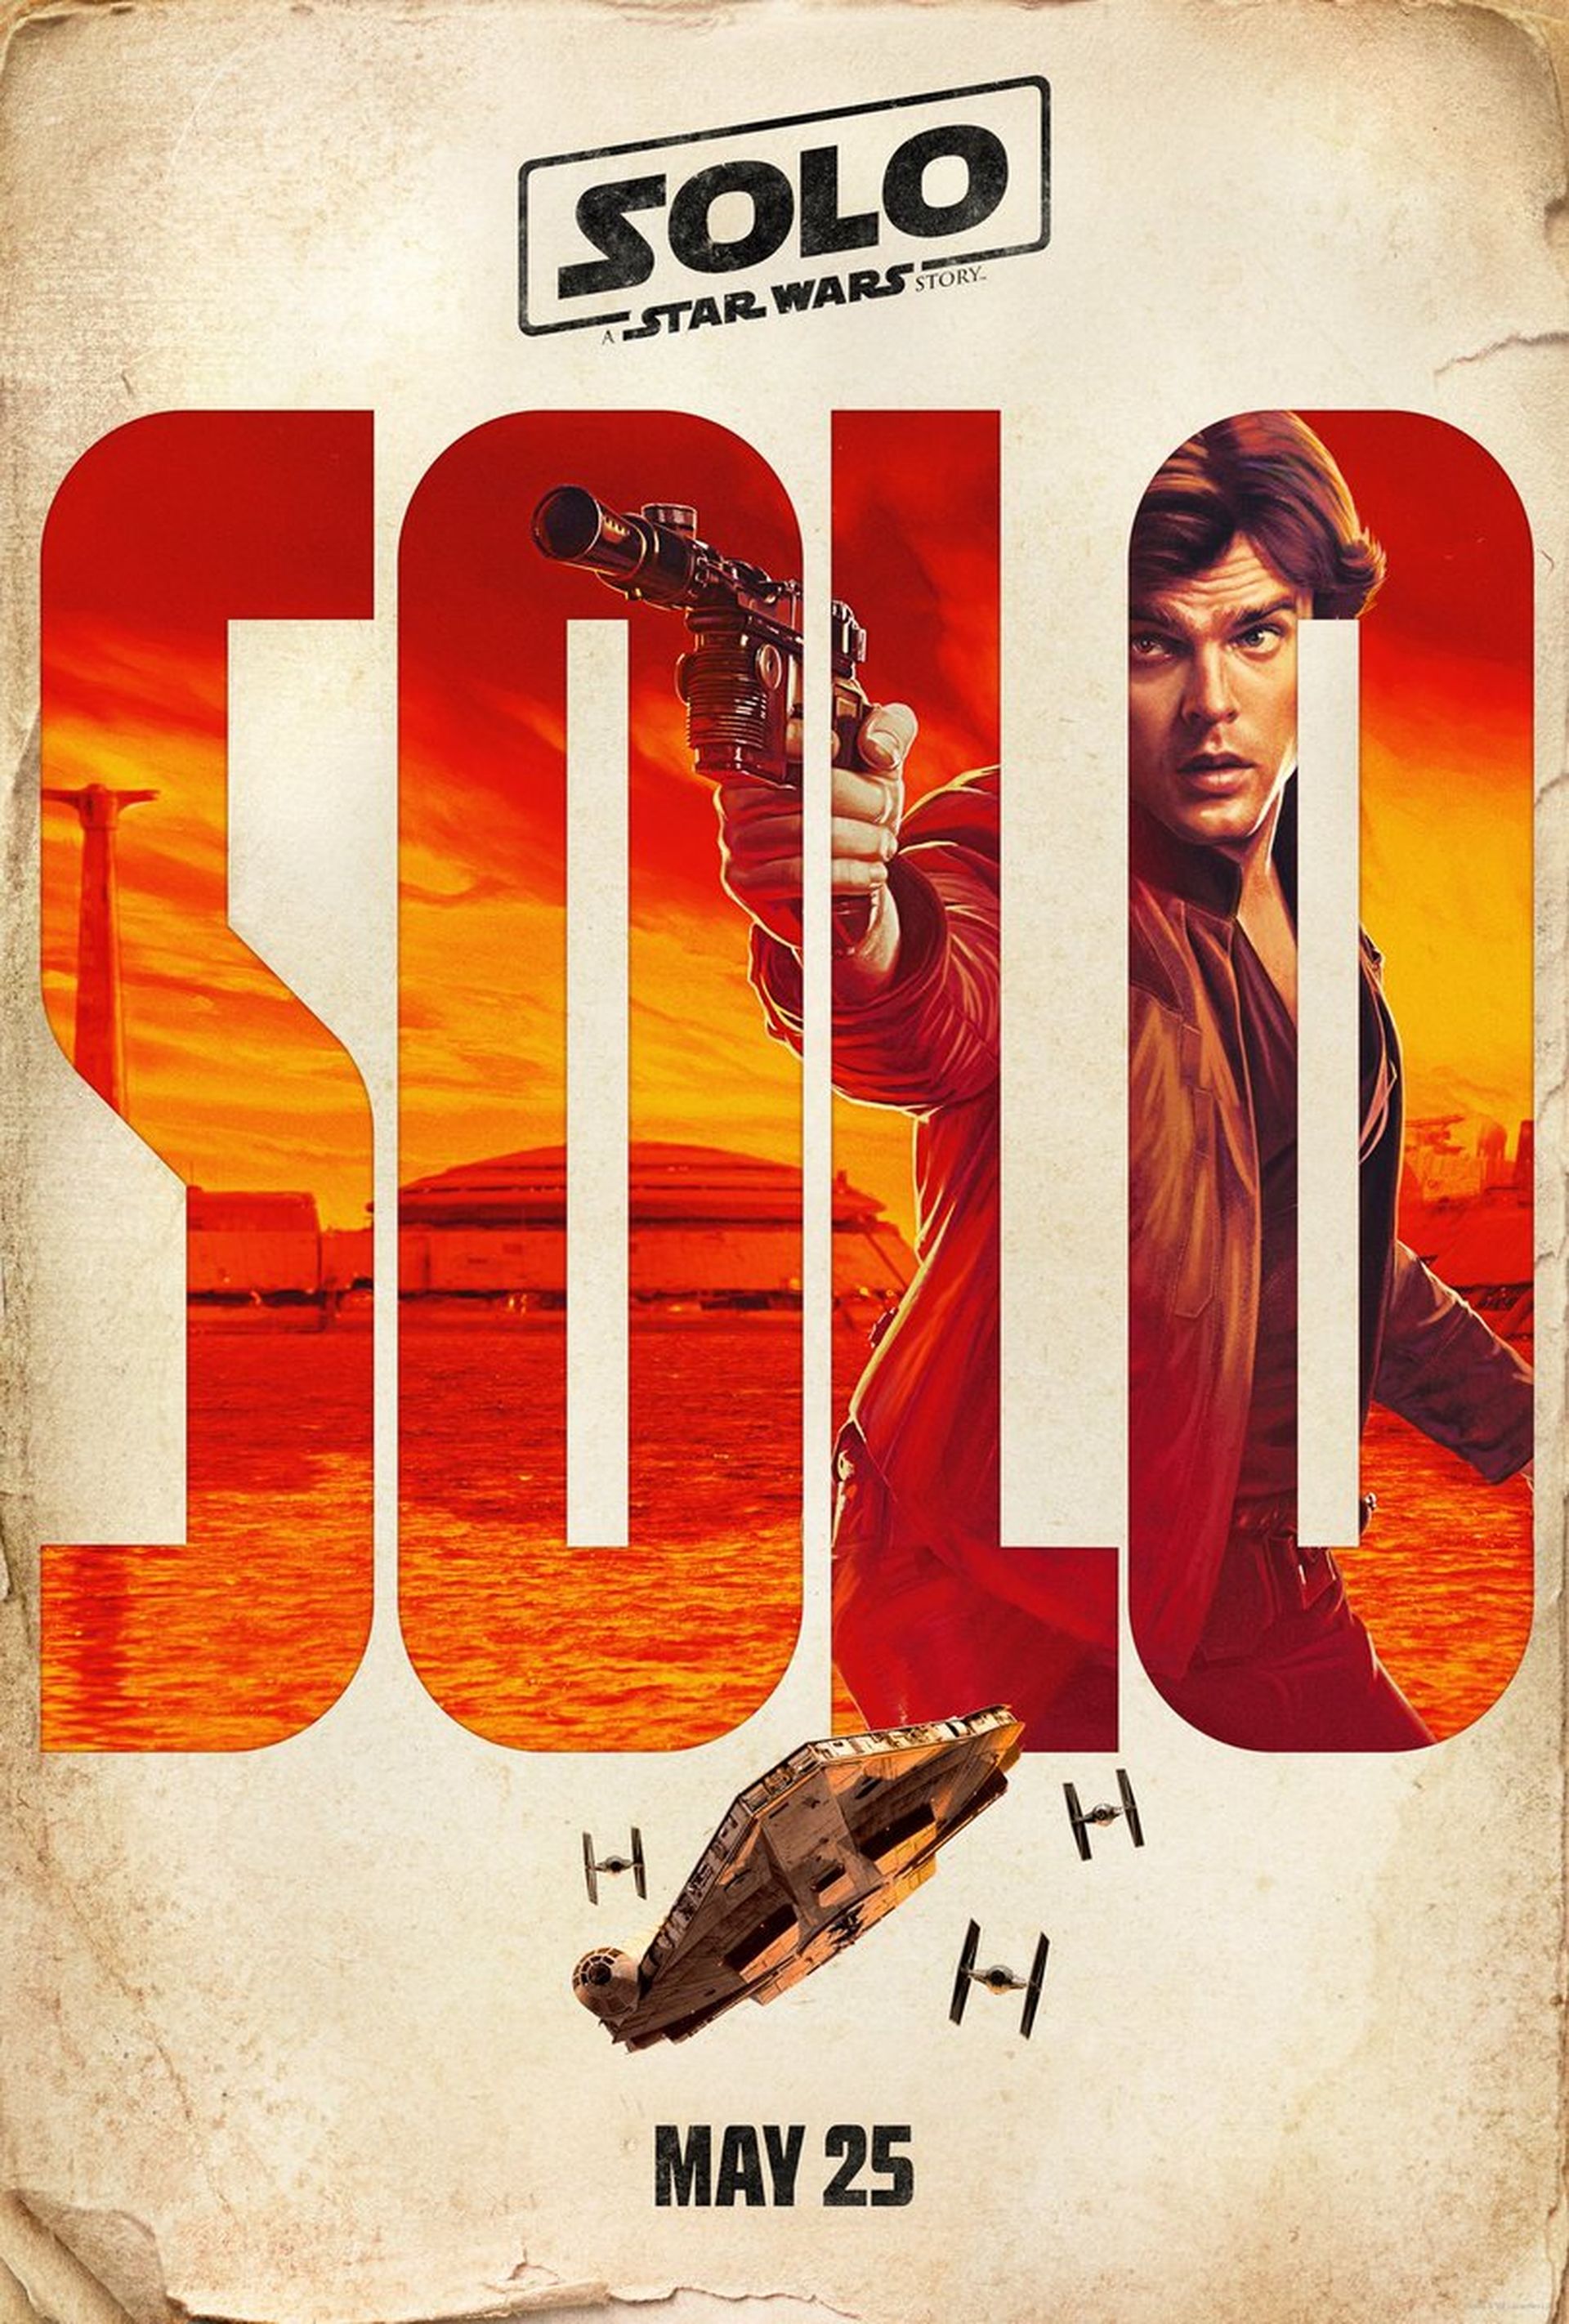 El Halcón Milenario de Han Solo: Una historia de Star Wars se salta el  canon